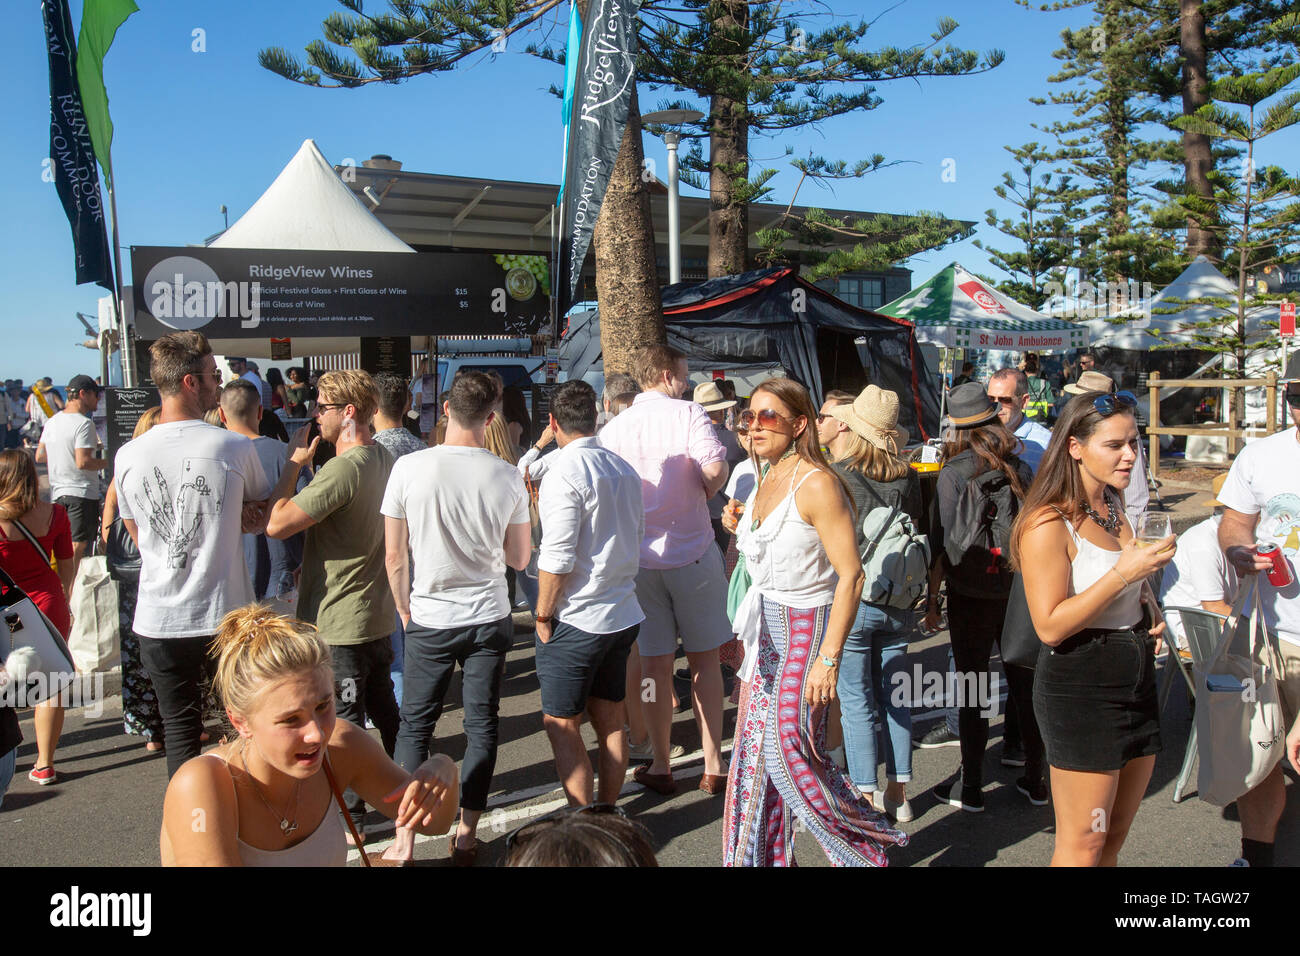 Geschmack von Manly, Australien Essen und Wein Festival in Manly Beach Sydney, Australien, statt auf den Straßen Stockfoto